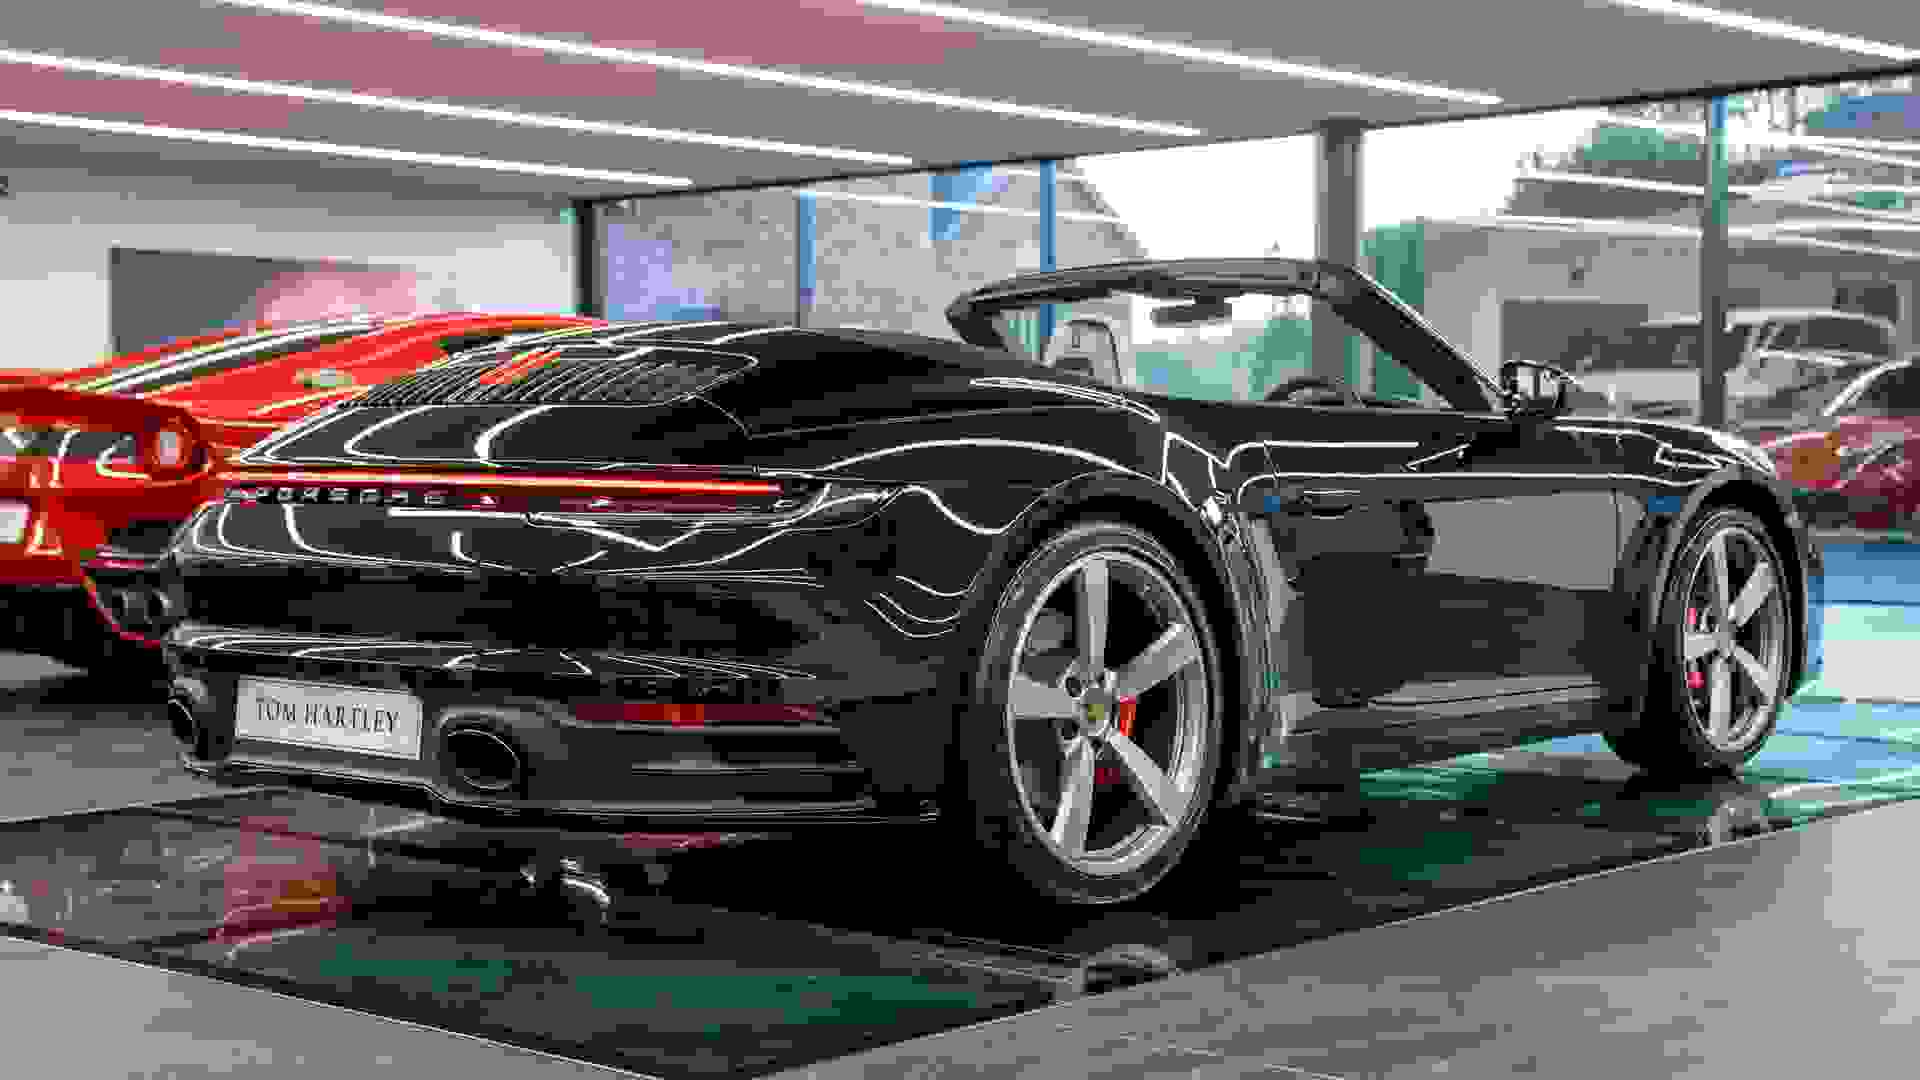 Porsche 911 Photo bc84b73e-94b8-467a-8f7b-416ff4a7a4c6.jpg